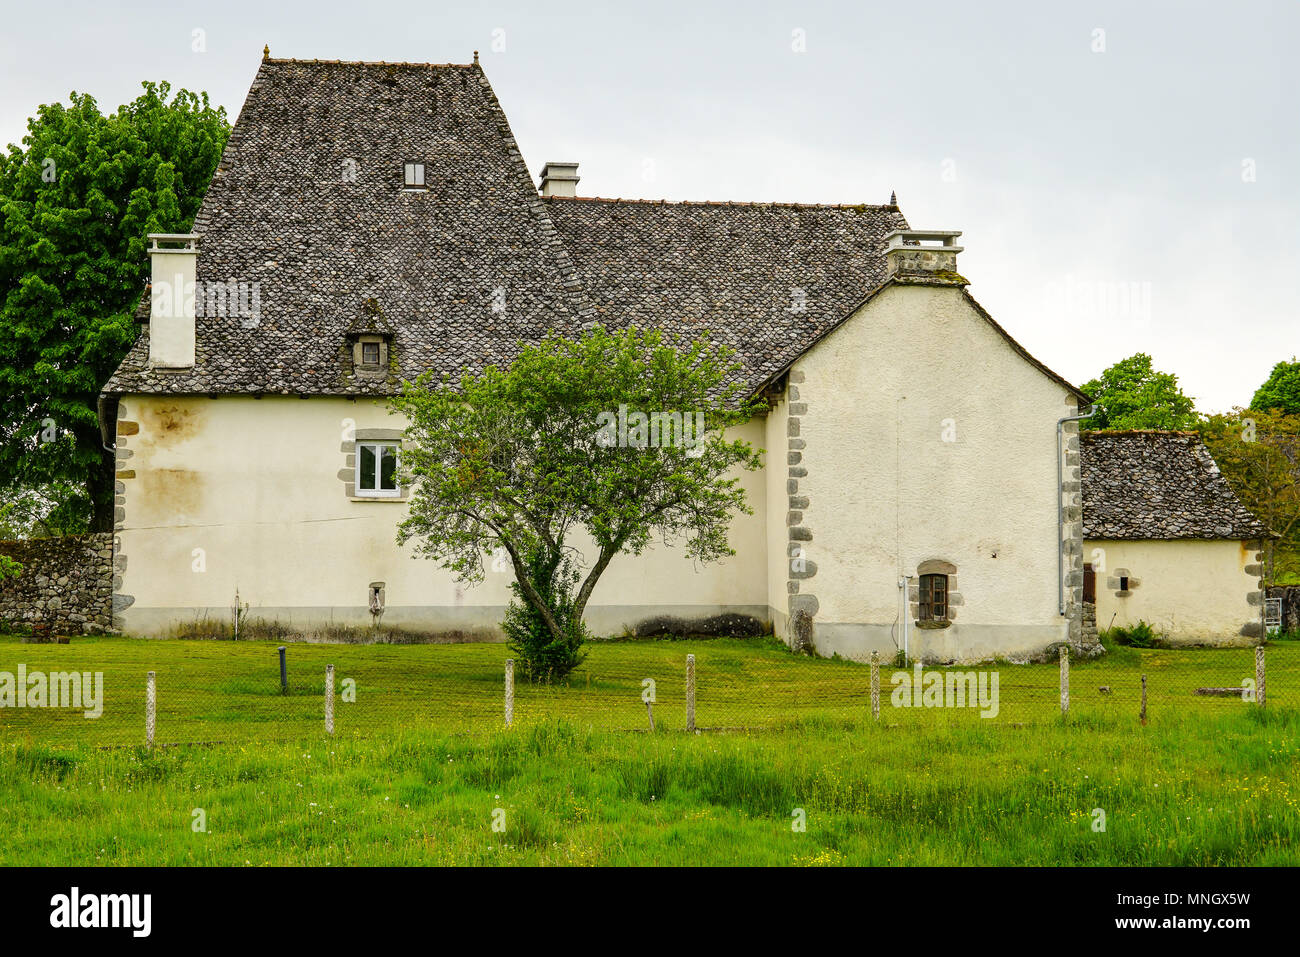 Maison avec un toit en ardoise en France, région occitane. Banque D'Images